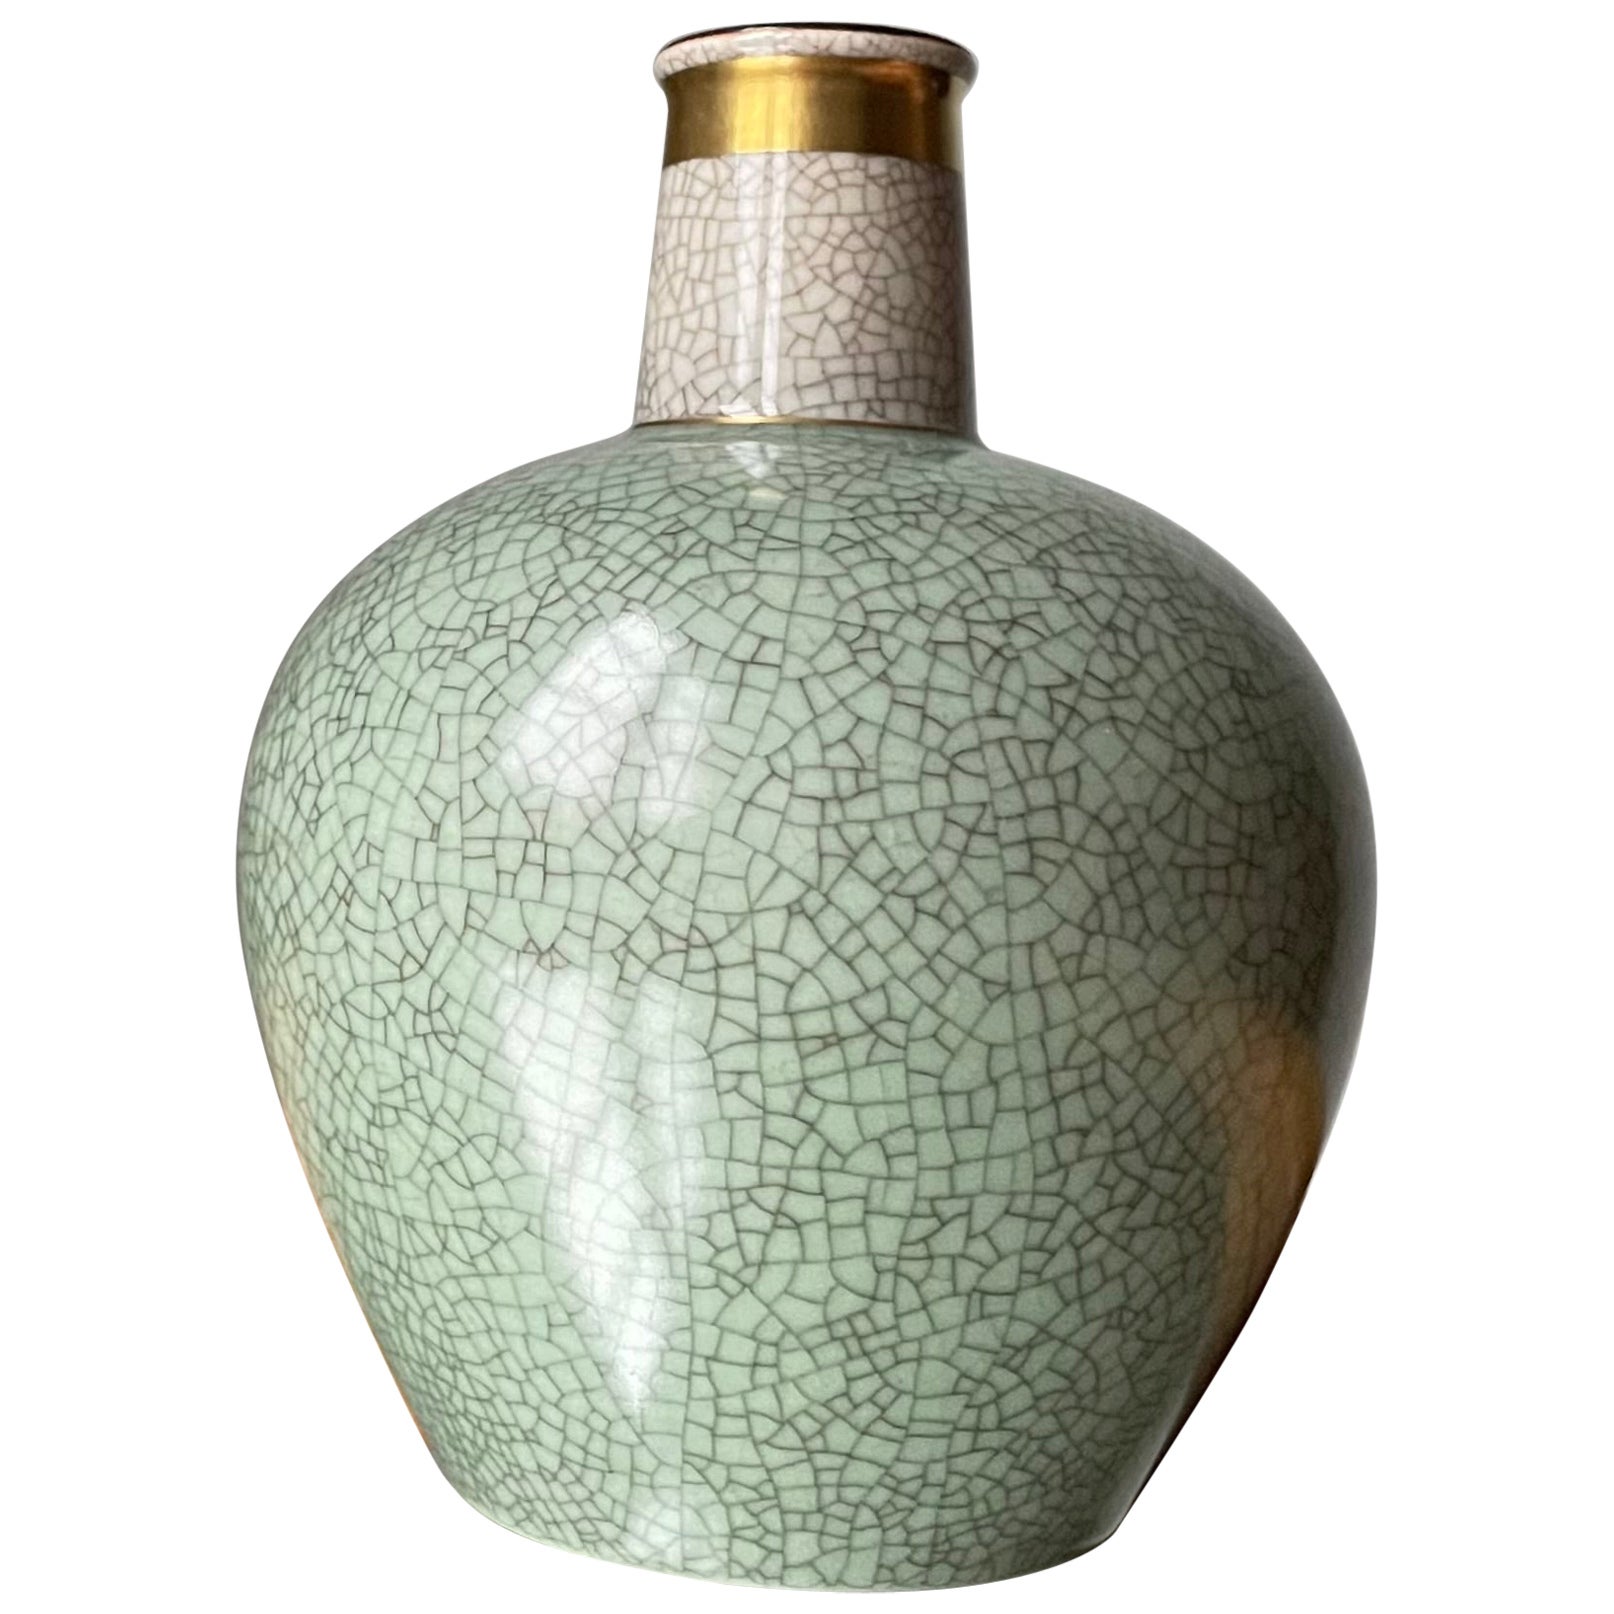 Green Gold Royal Copenhagen Crackle Glaze Vase, 1950s For Sale